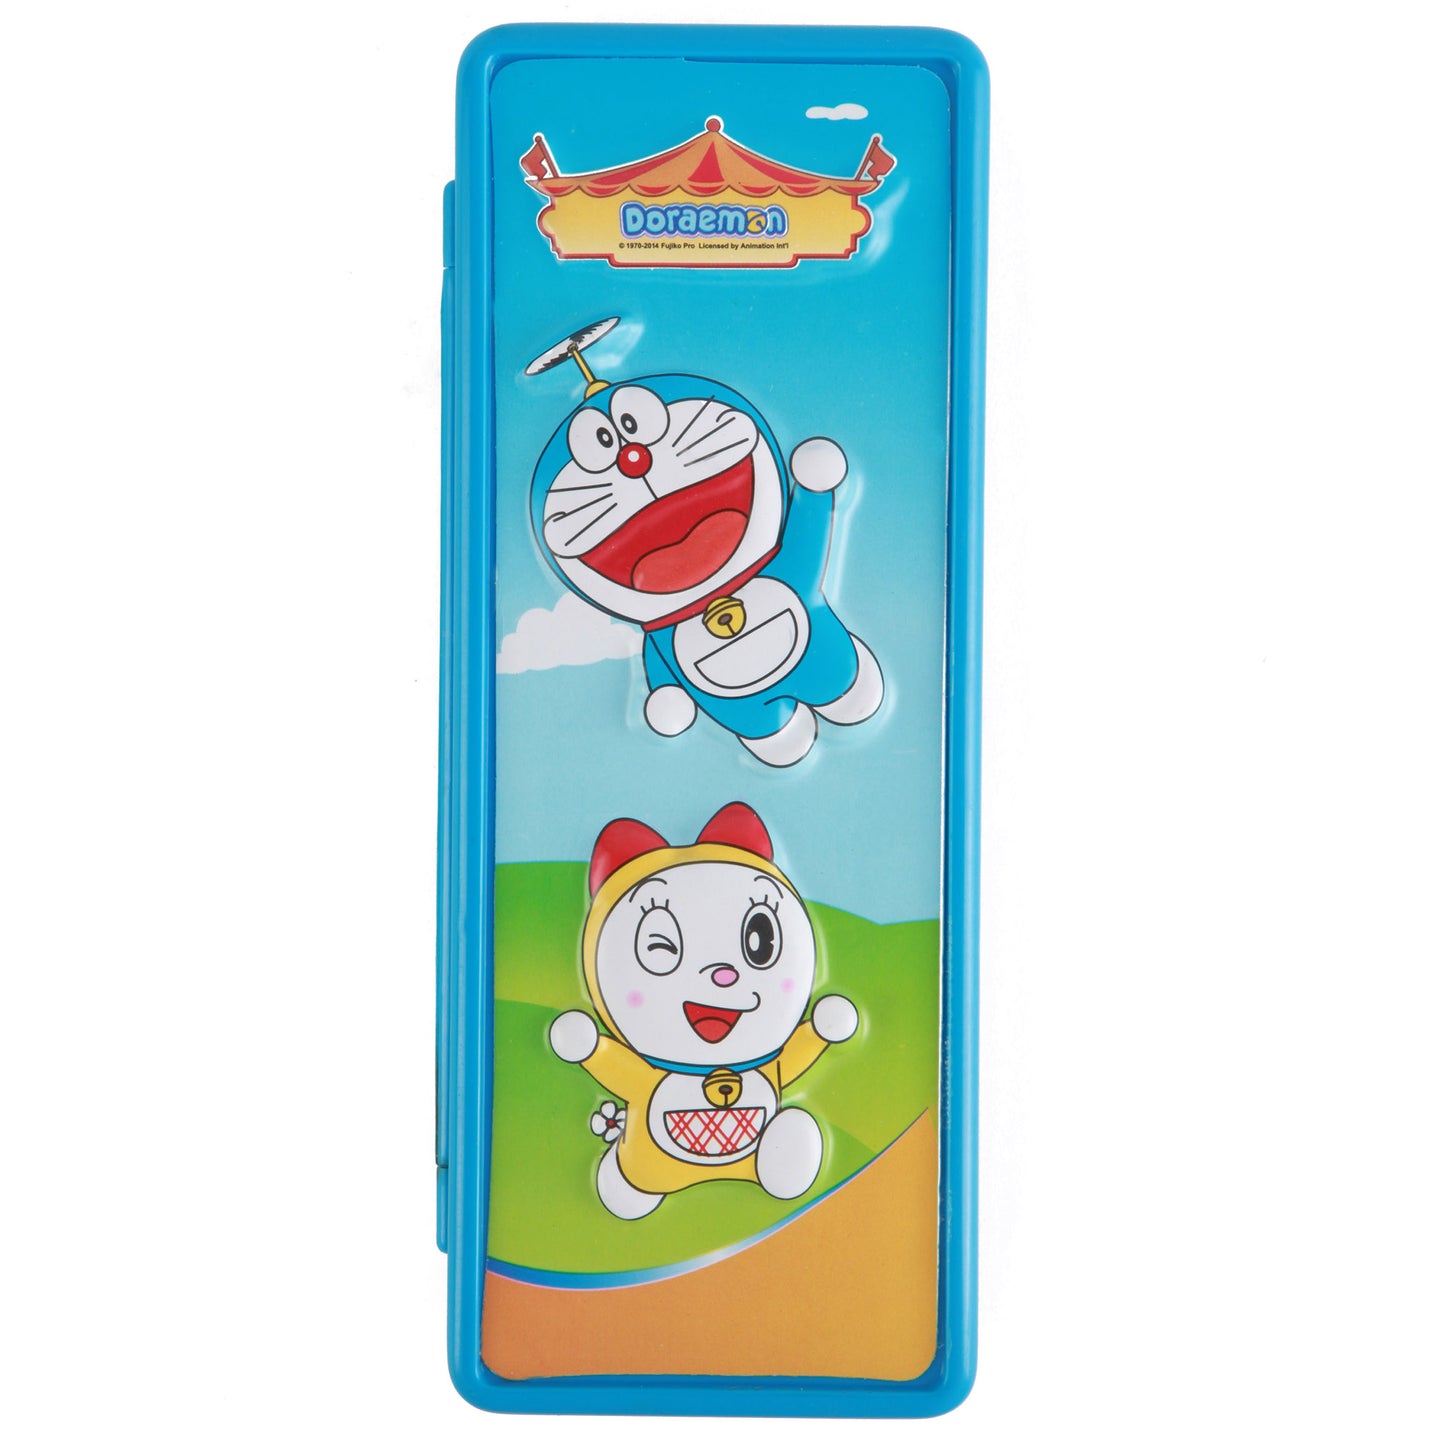 Doraemon - 2D Embossed Pencil Box